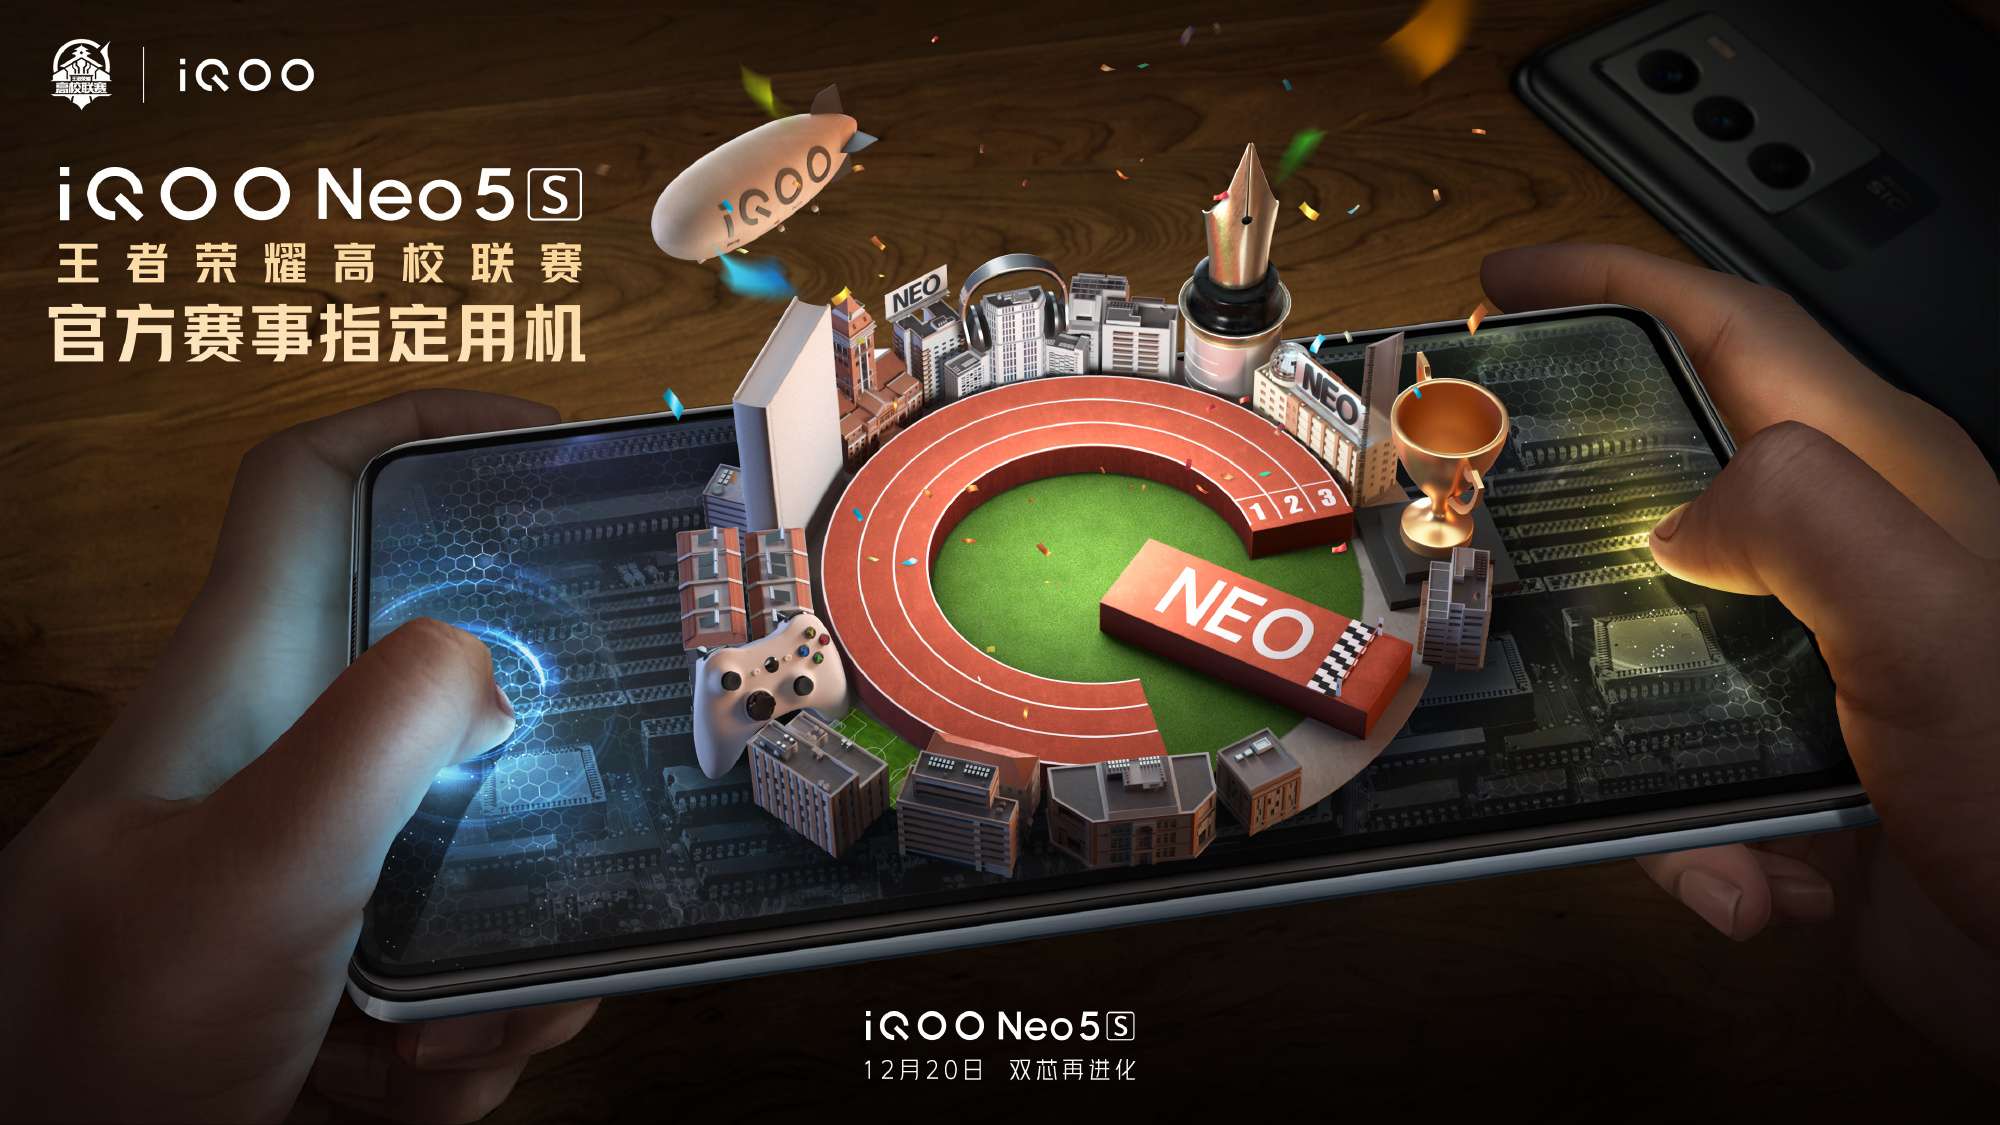 Officiellement : iQOO Neo 5s avec écran AMOLED, puce Snapdragon 888 et charge rapide 66W sera présenté le 20 décembre